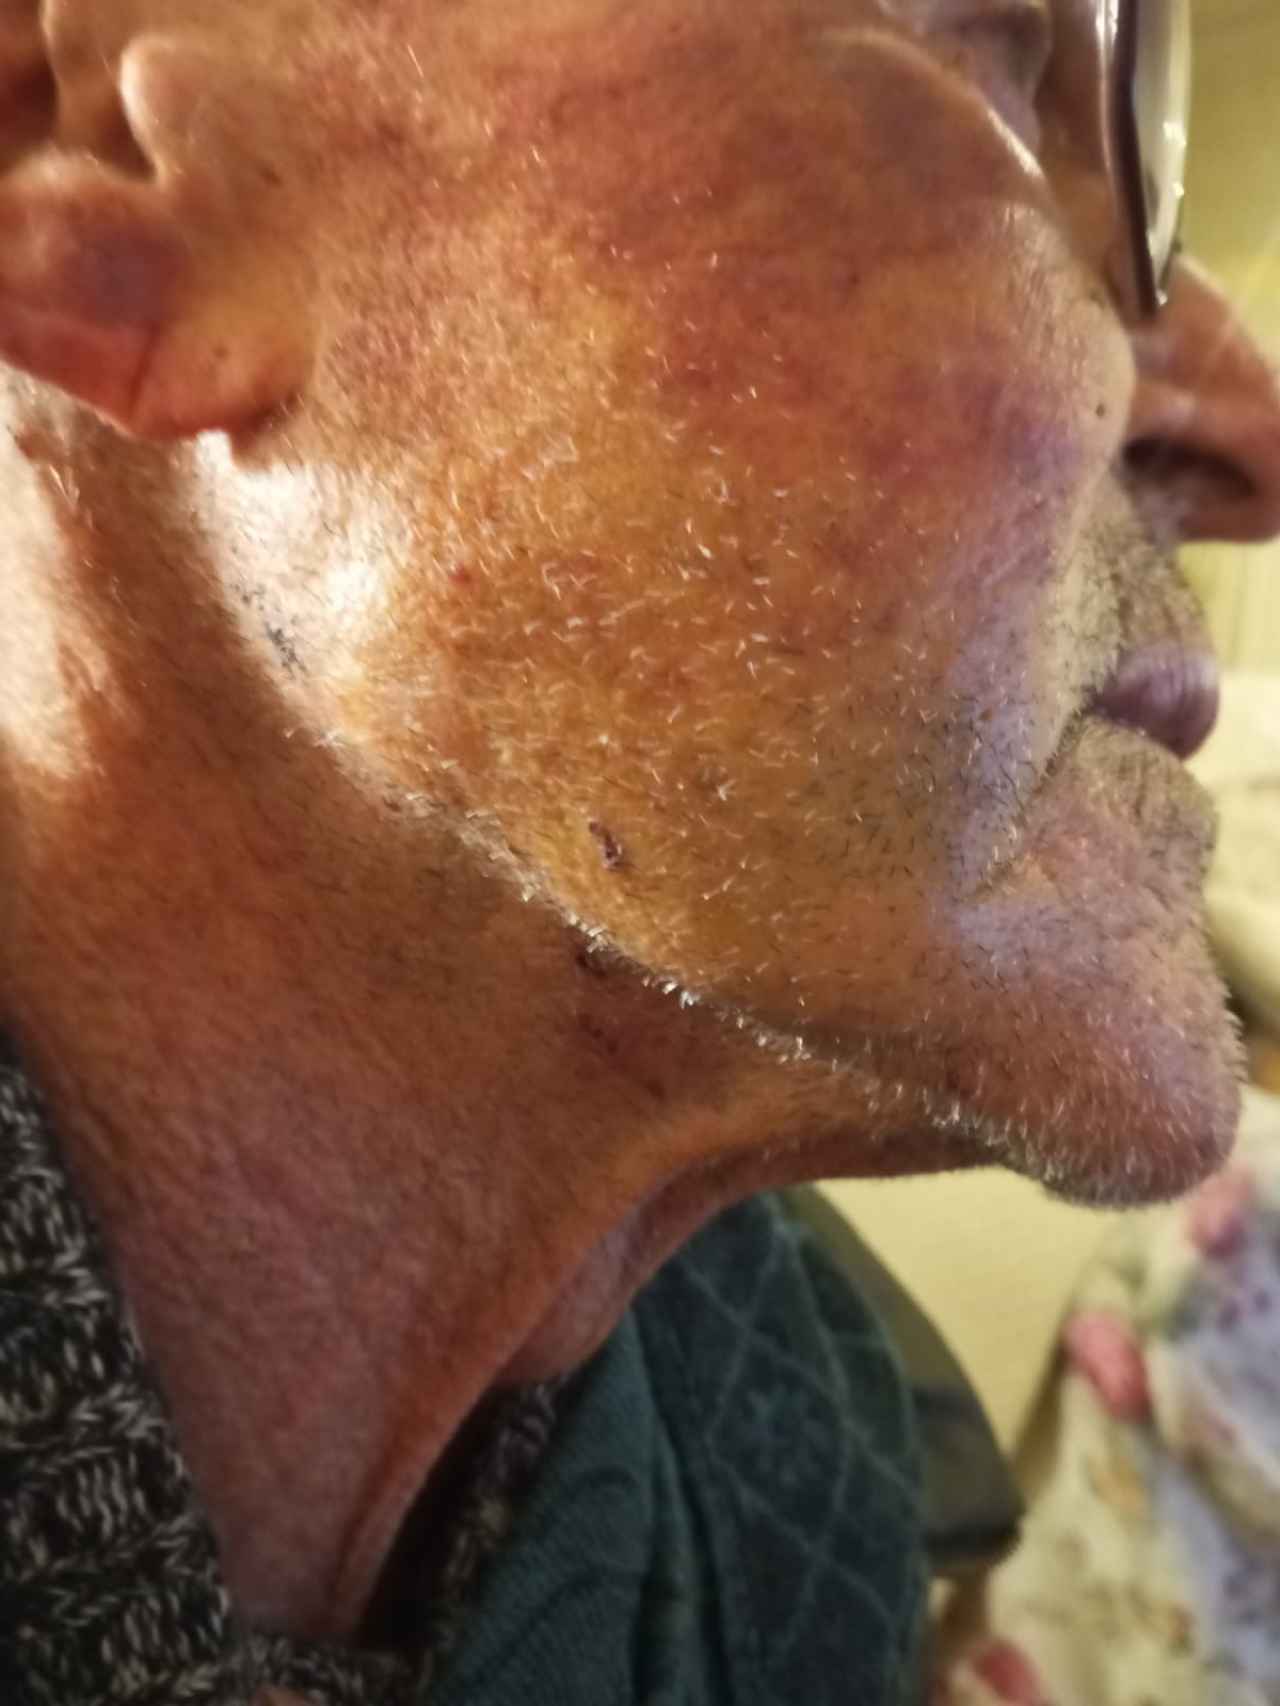 Un detalle del rostro de Julio, todavía amoratado, días después del robo, donde se aprecian tres pequeñas cicatrices por los pinchazos que recibió en el cuello con un cuchillo de cocina.